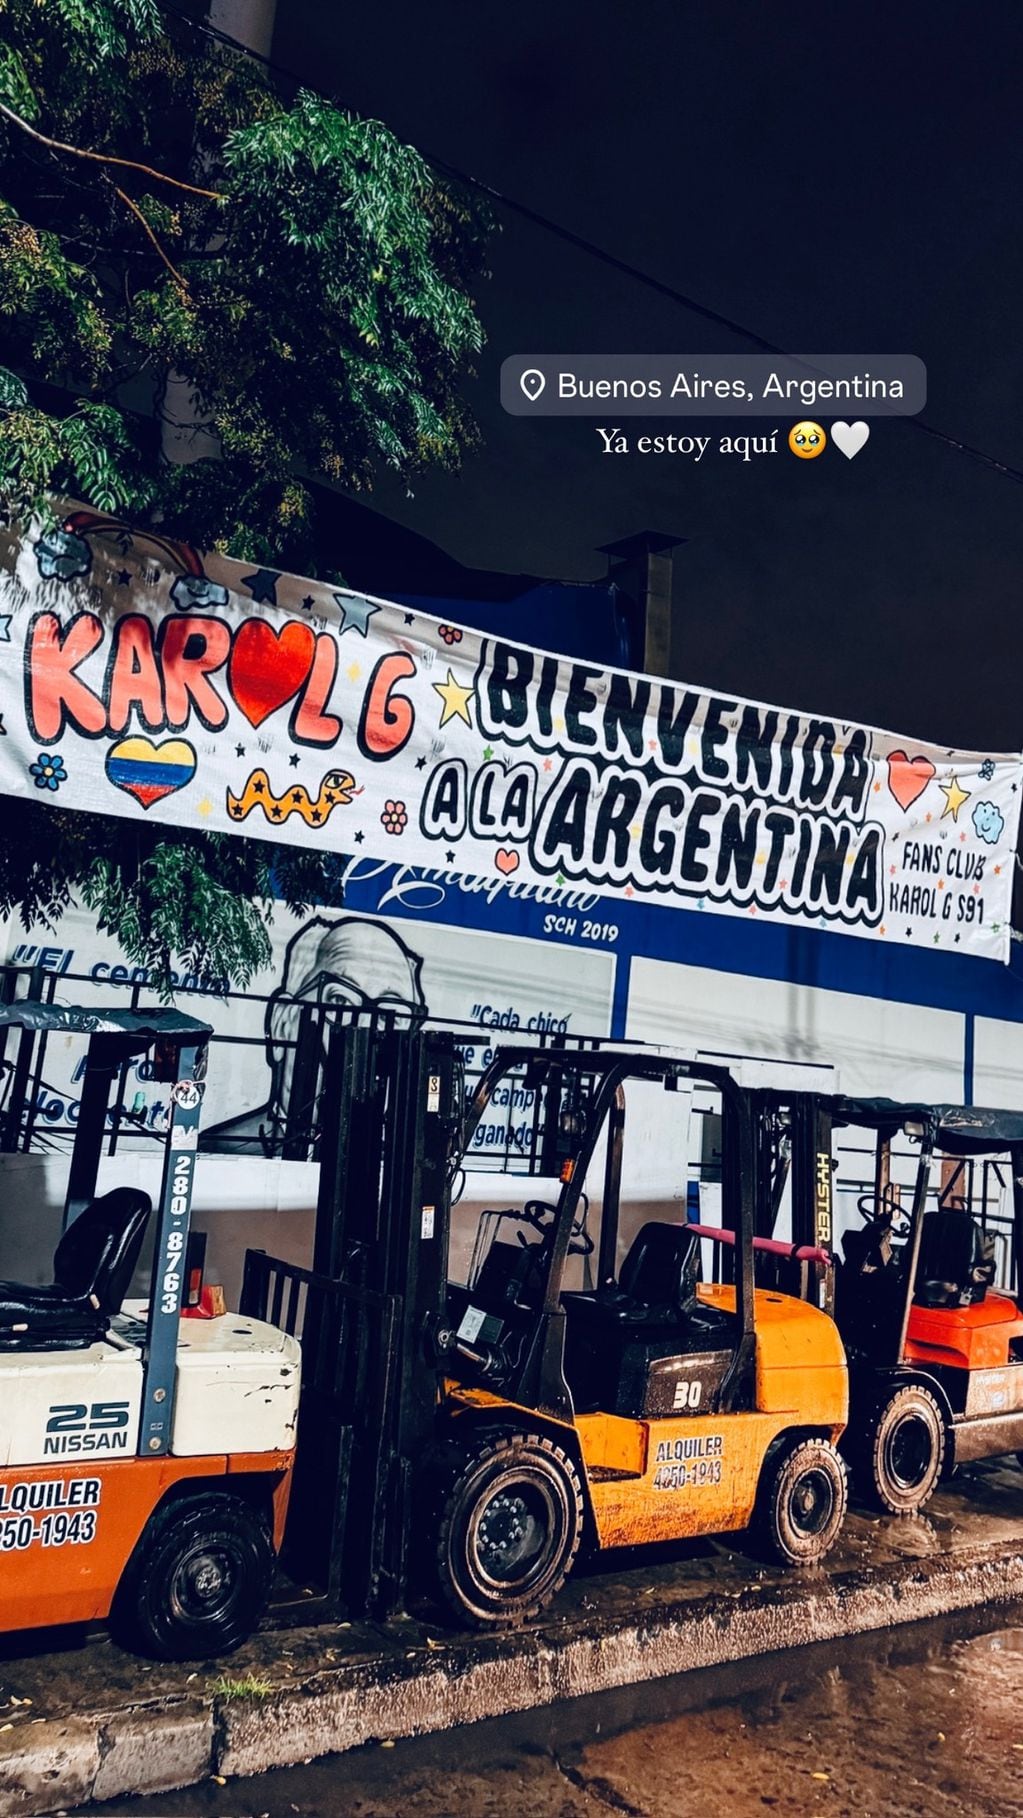 La bienvenida de Karol G a la Argentina